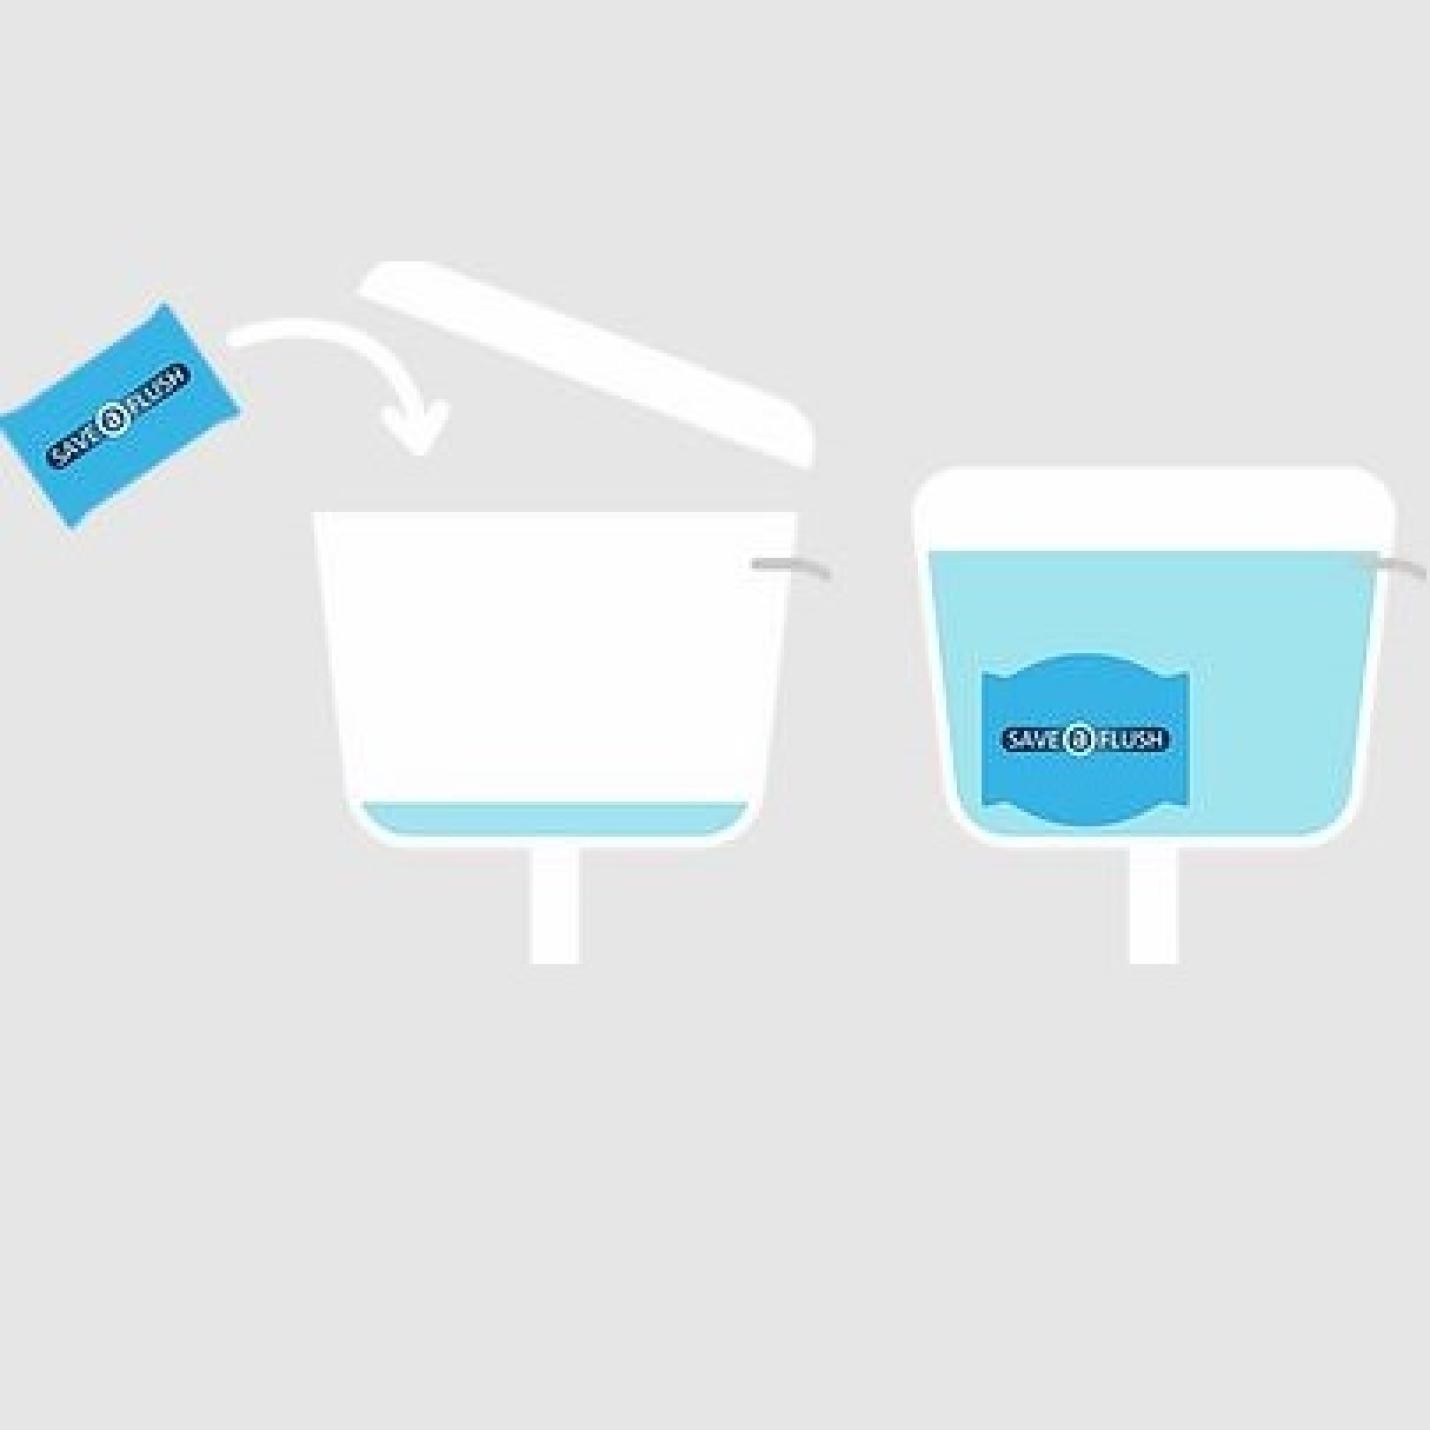 Save a Flush Stortbak verkleiner 1L; Afbeelding: 3